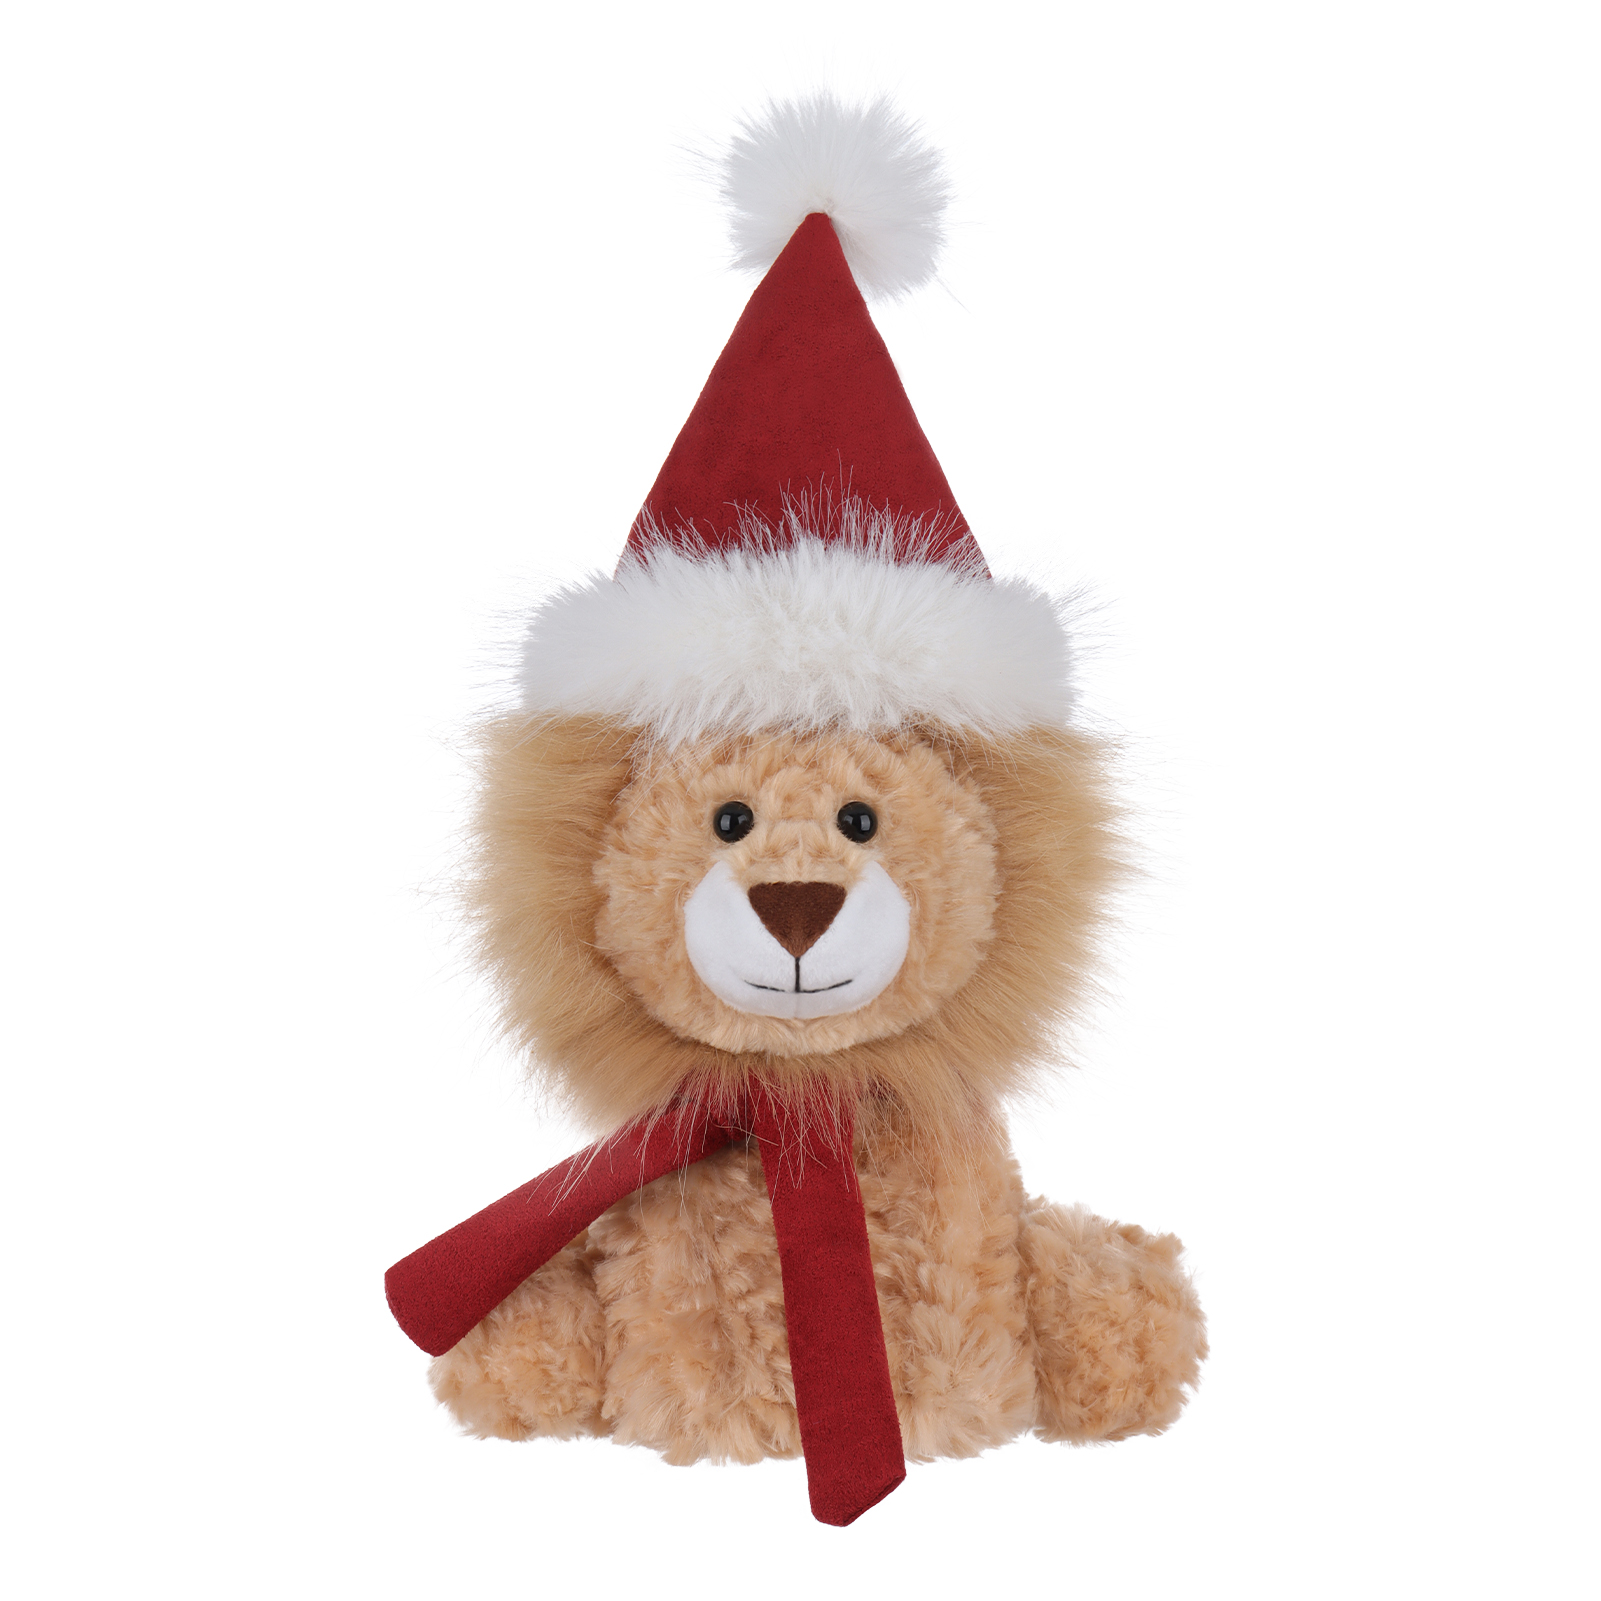 Apricot Lamb Christmas yellow plush lion Stuffed Animal Soft Plush Toys